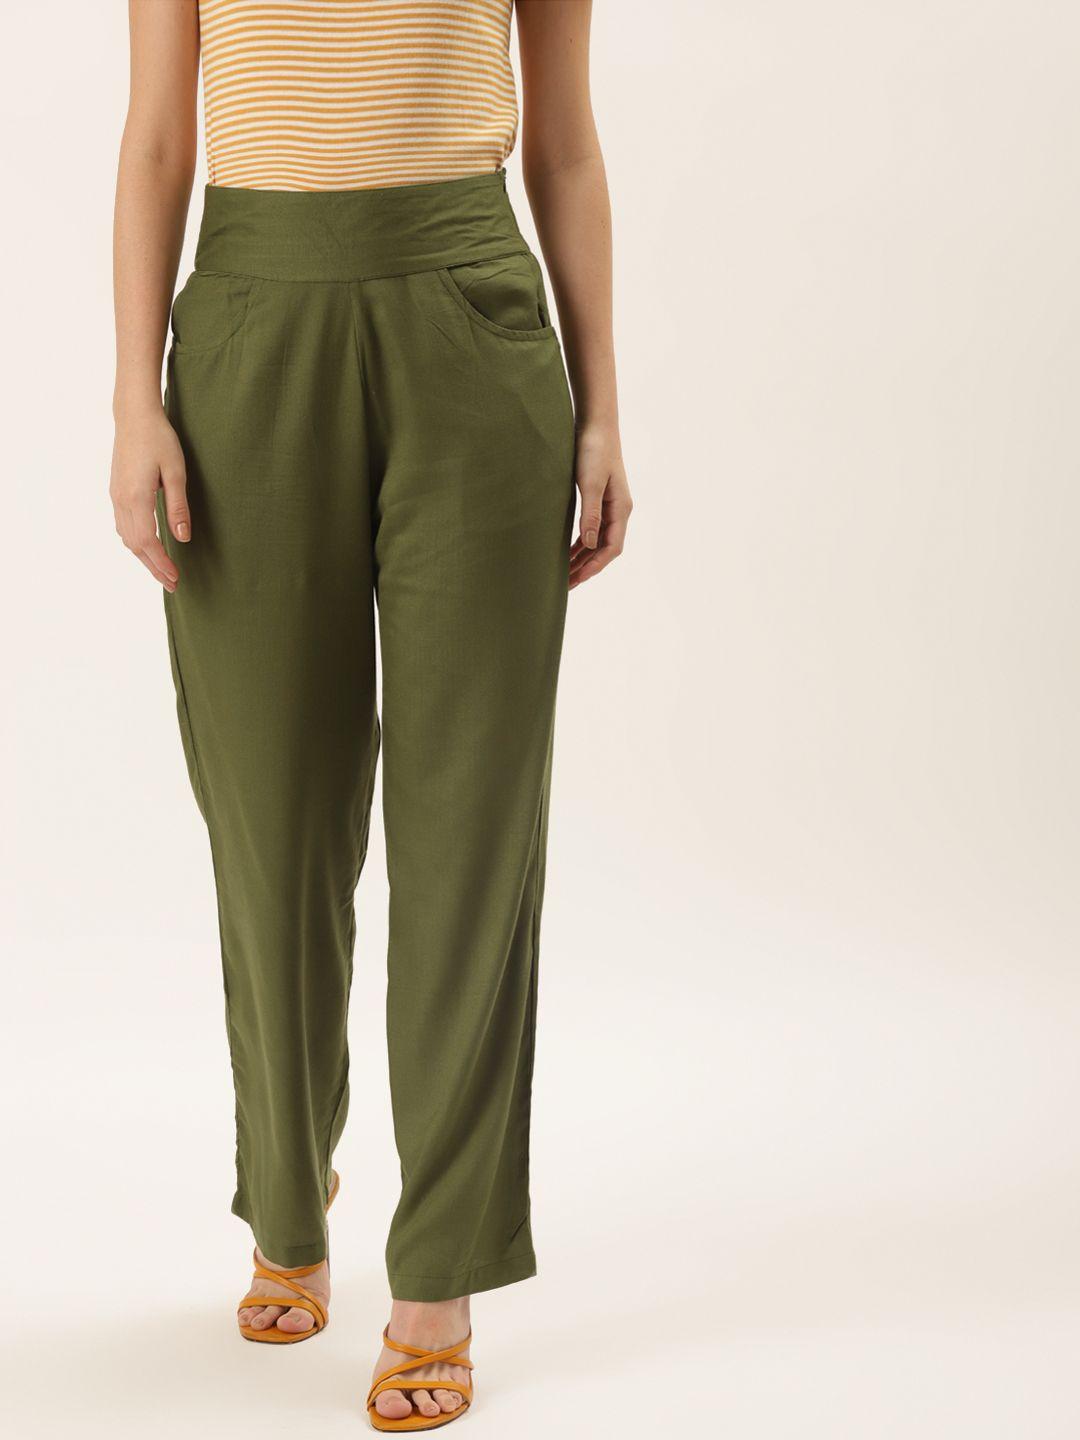 alsace lorraine paris women olive green smart trousers